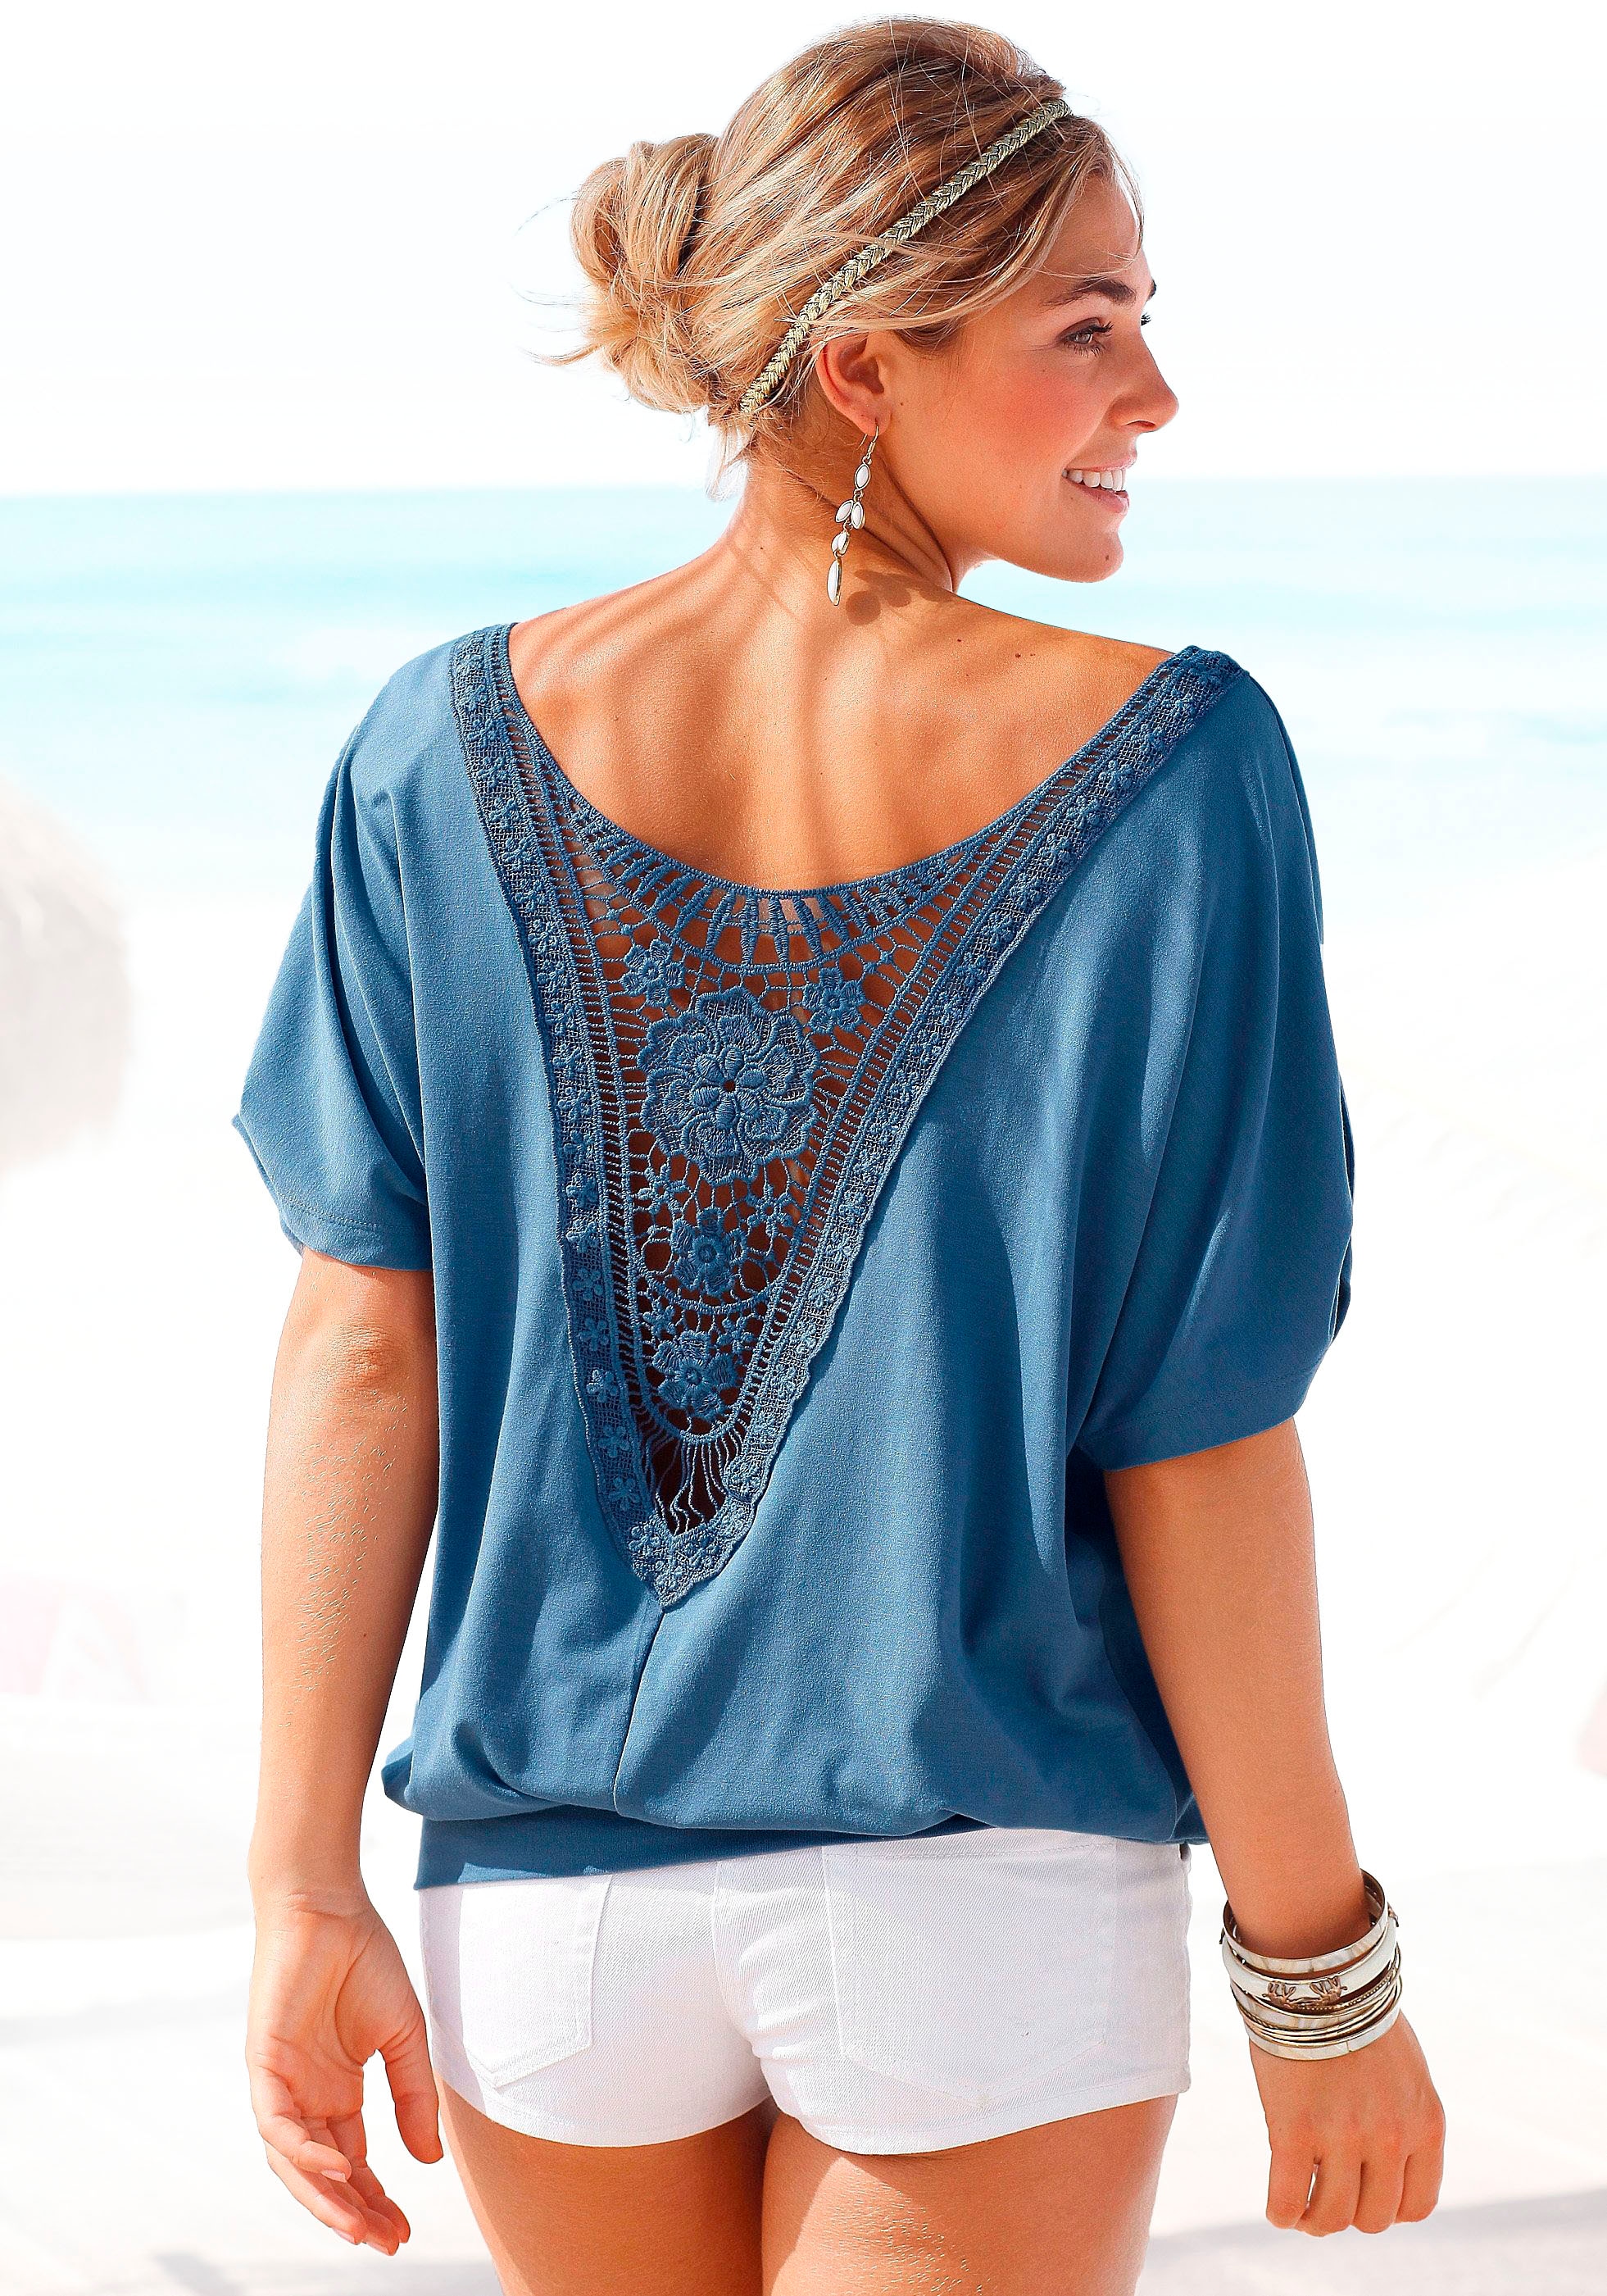 Strandshirt, mit Häkeleinsatz am Rücken, T-Shirt, weite Passform, luftig und locker